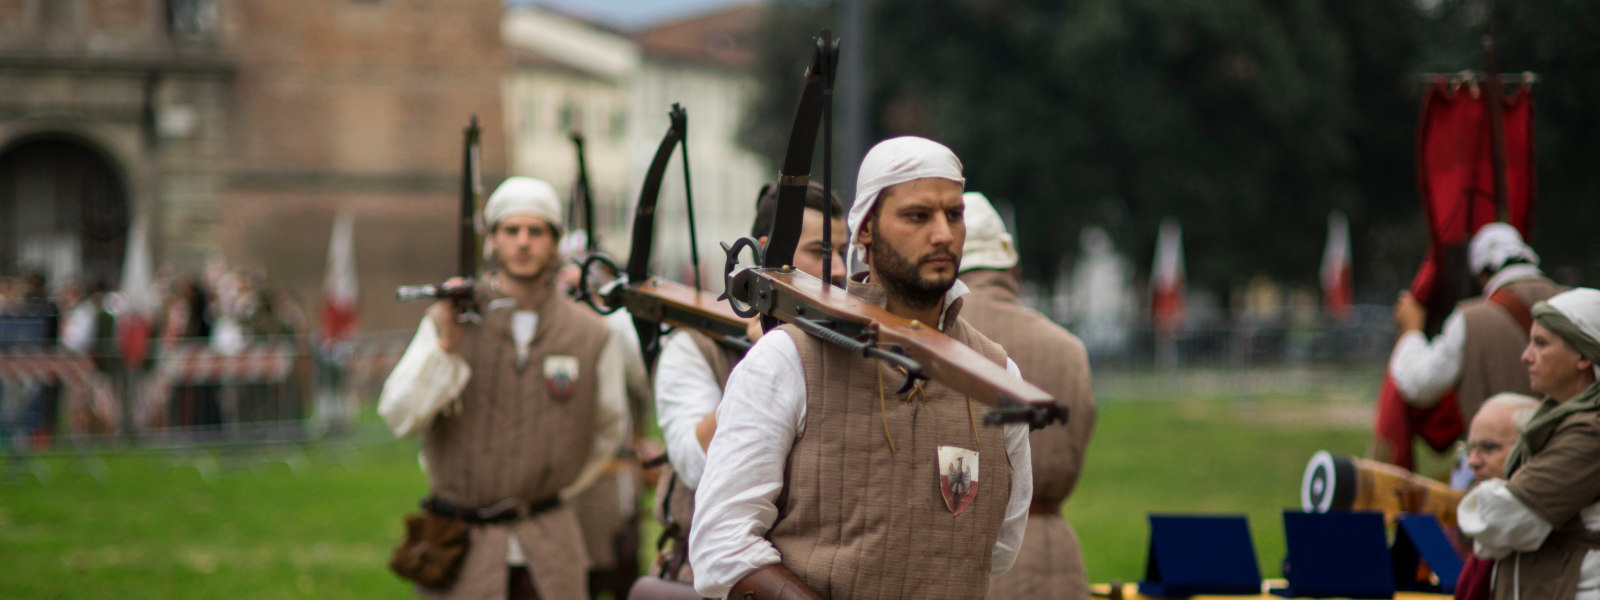 🎯 Lucca e la balestra: un legame che dura da secoli